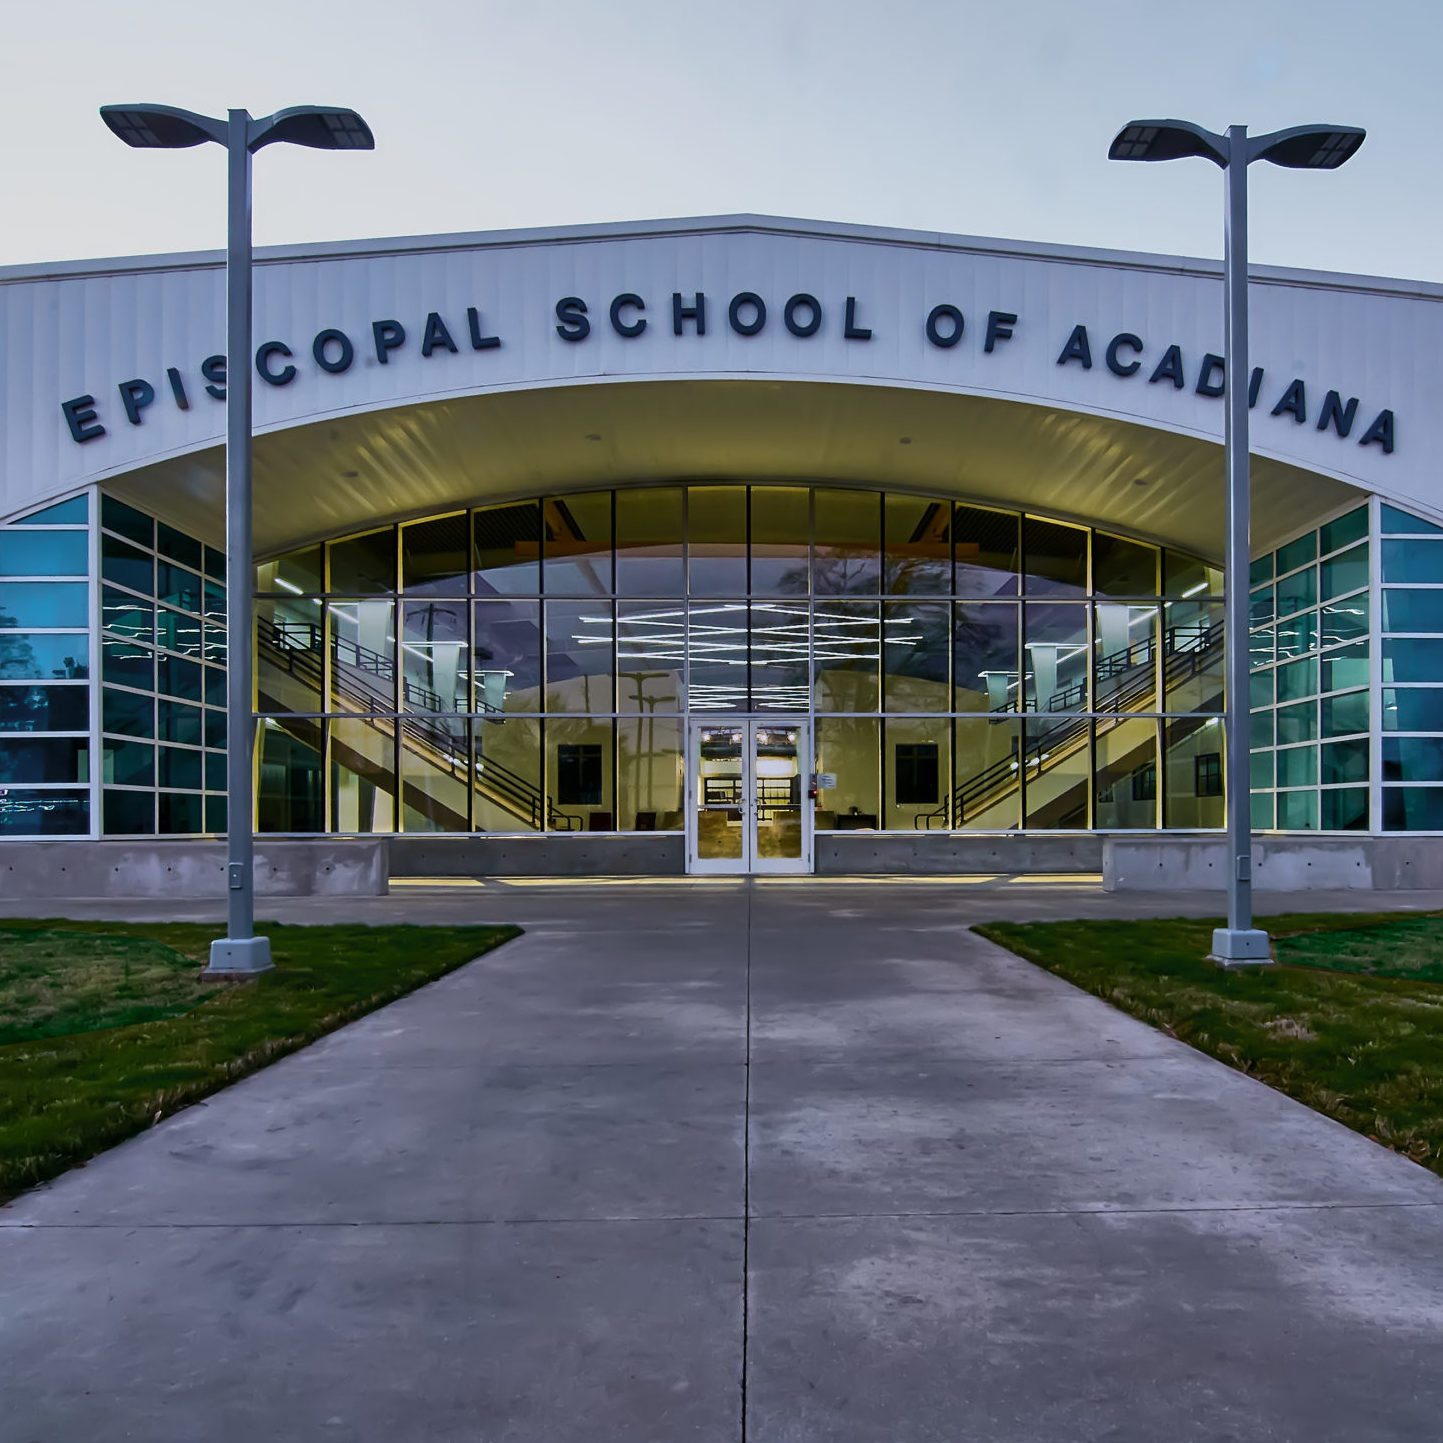 EPISCOPAL SCHOOL OF ACADIANA – LOWER SCHOOL